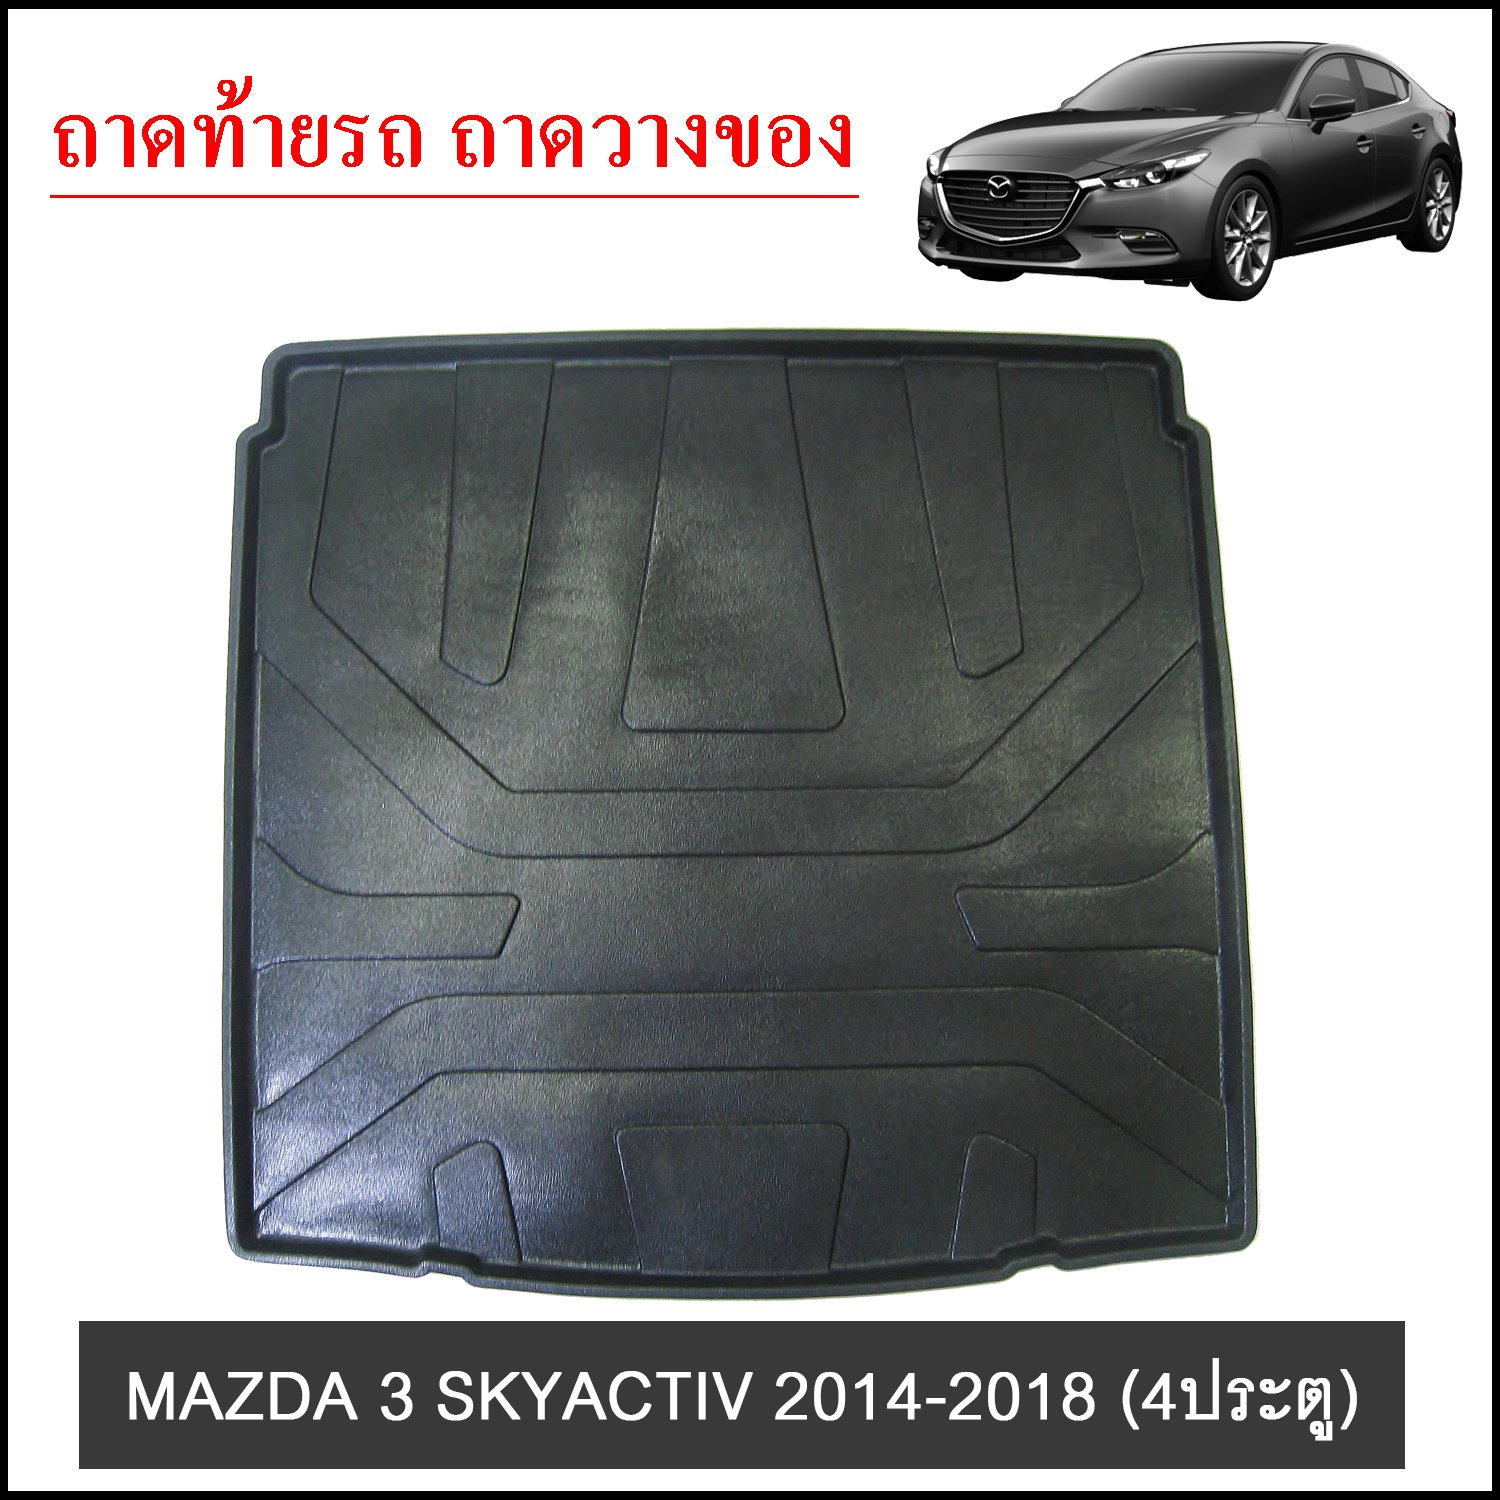 ถาดท้ายวางของ MAZDA 3 SKYACTIV 2014-2018 4ประตู